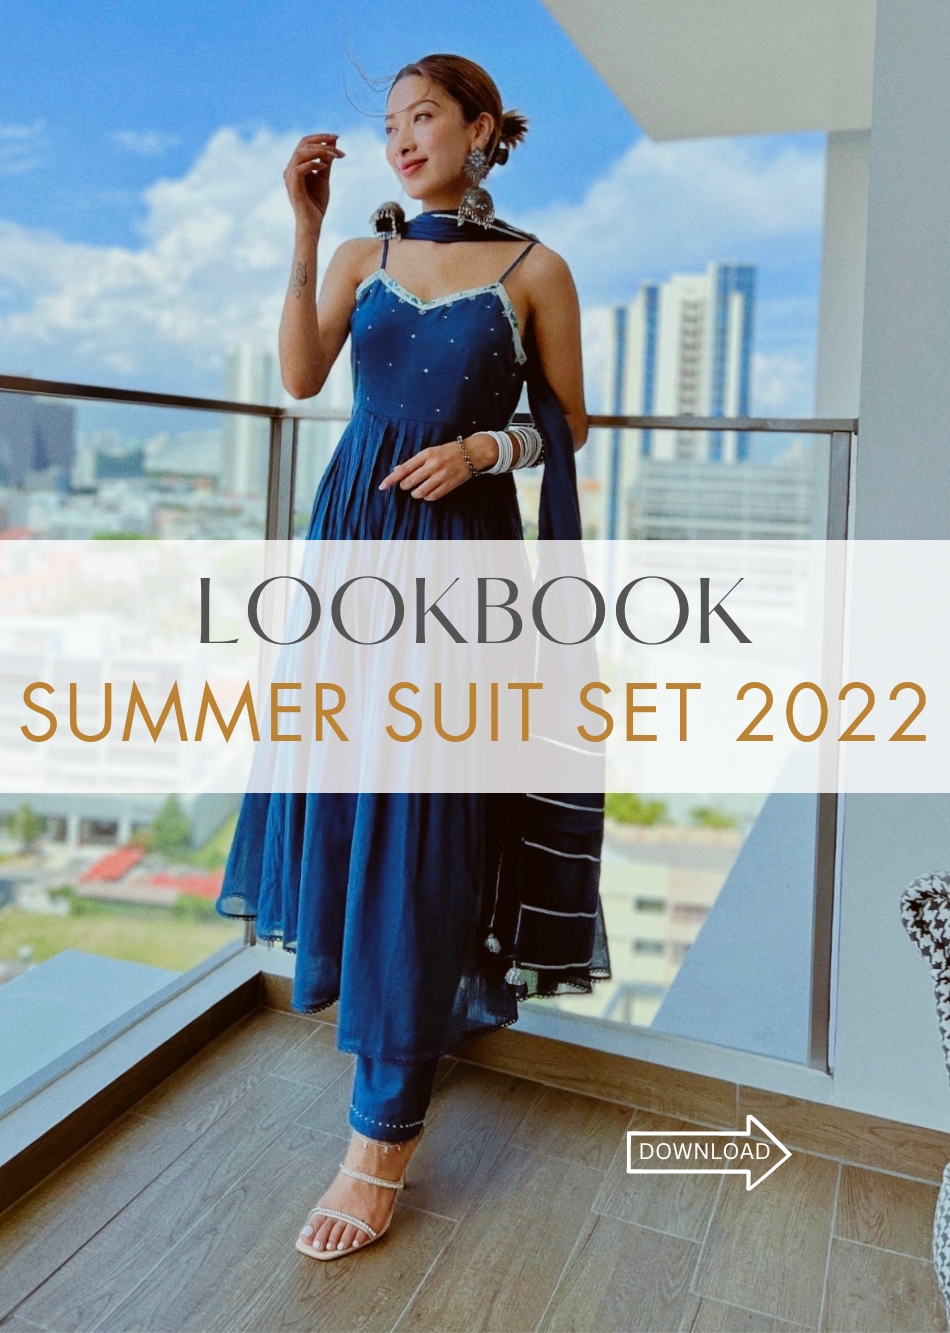 Summer Suit Sets 2022